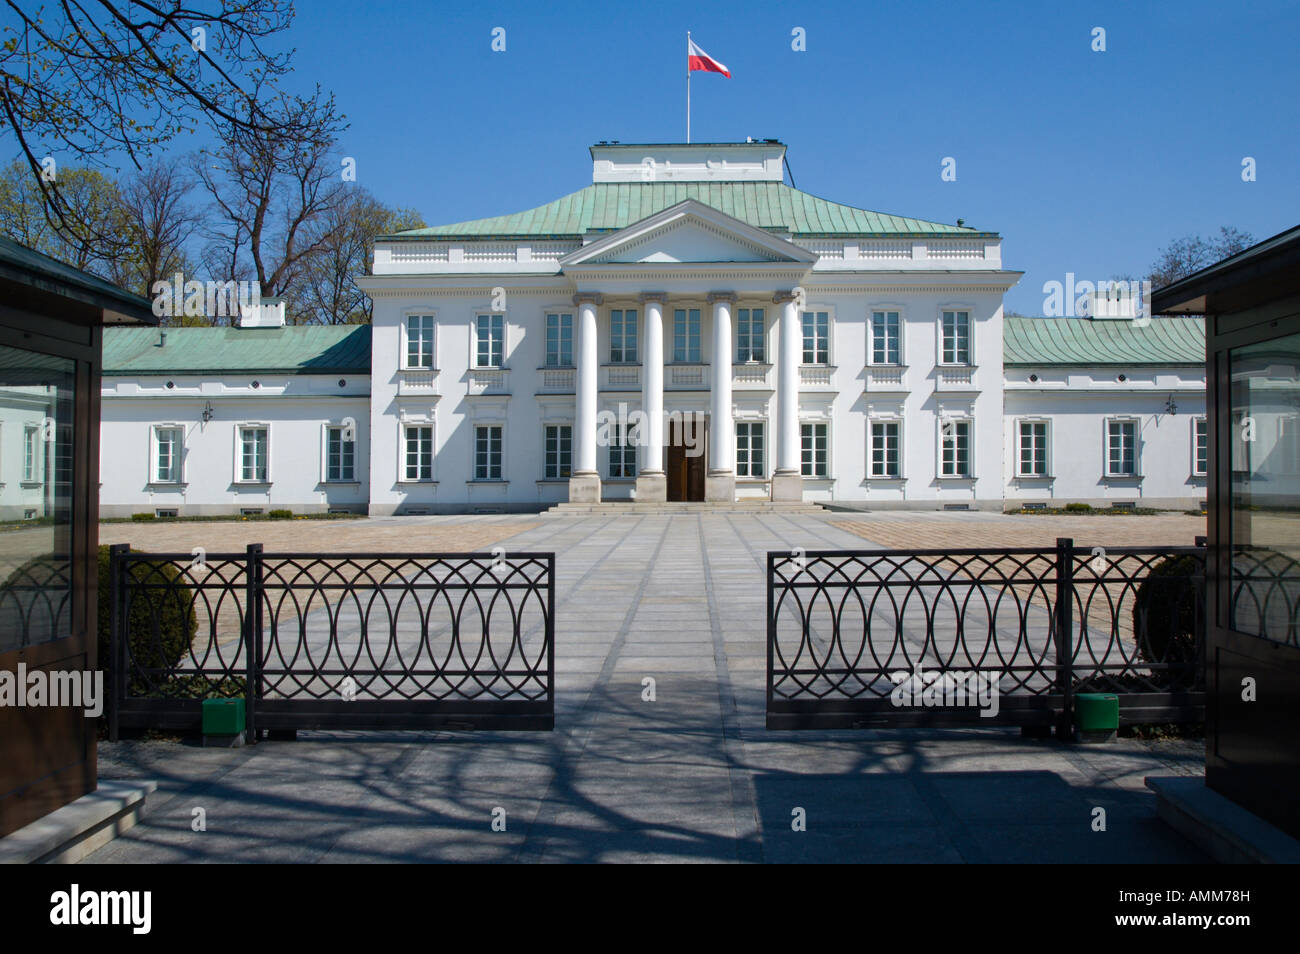 Belweder Palast ehemaligen polnischen Präsidenten Haus mit polnischen Fahnenschwingen auf dem Dach Stockfoto